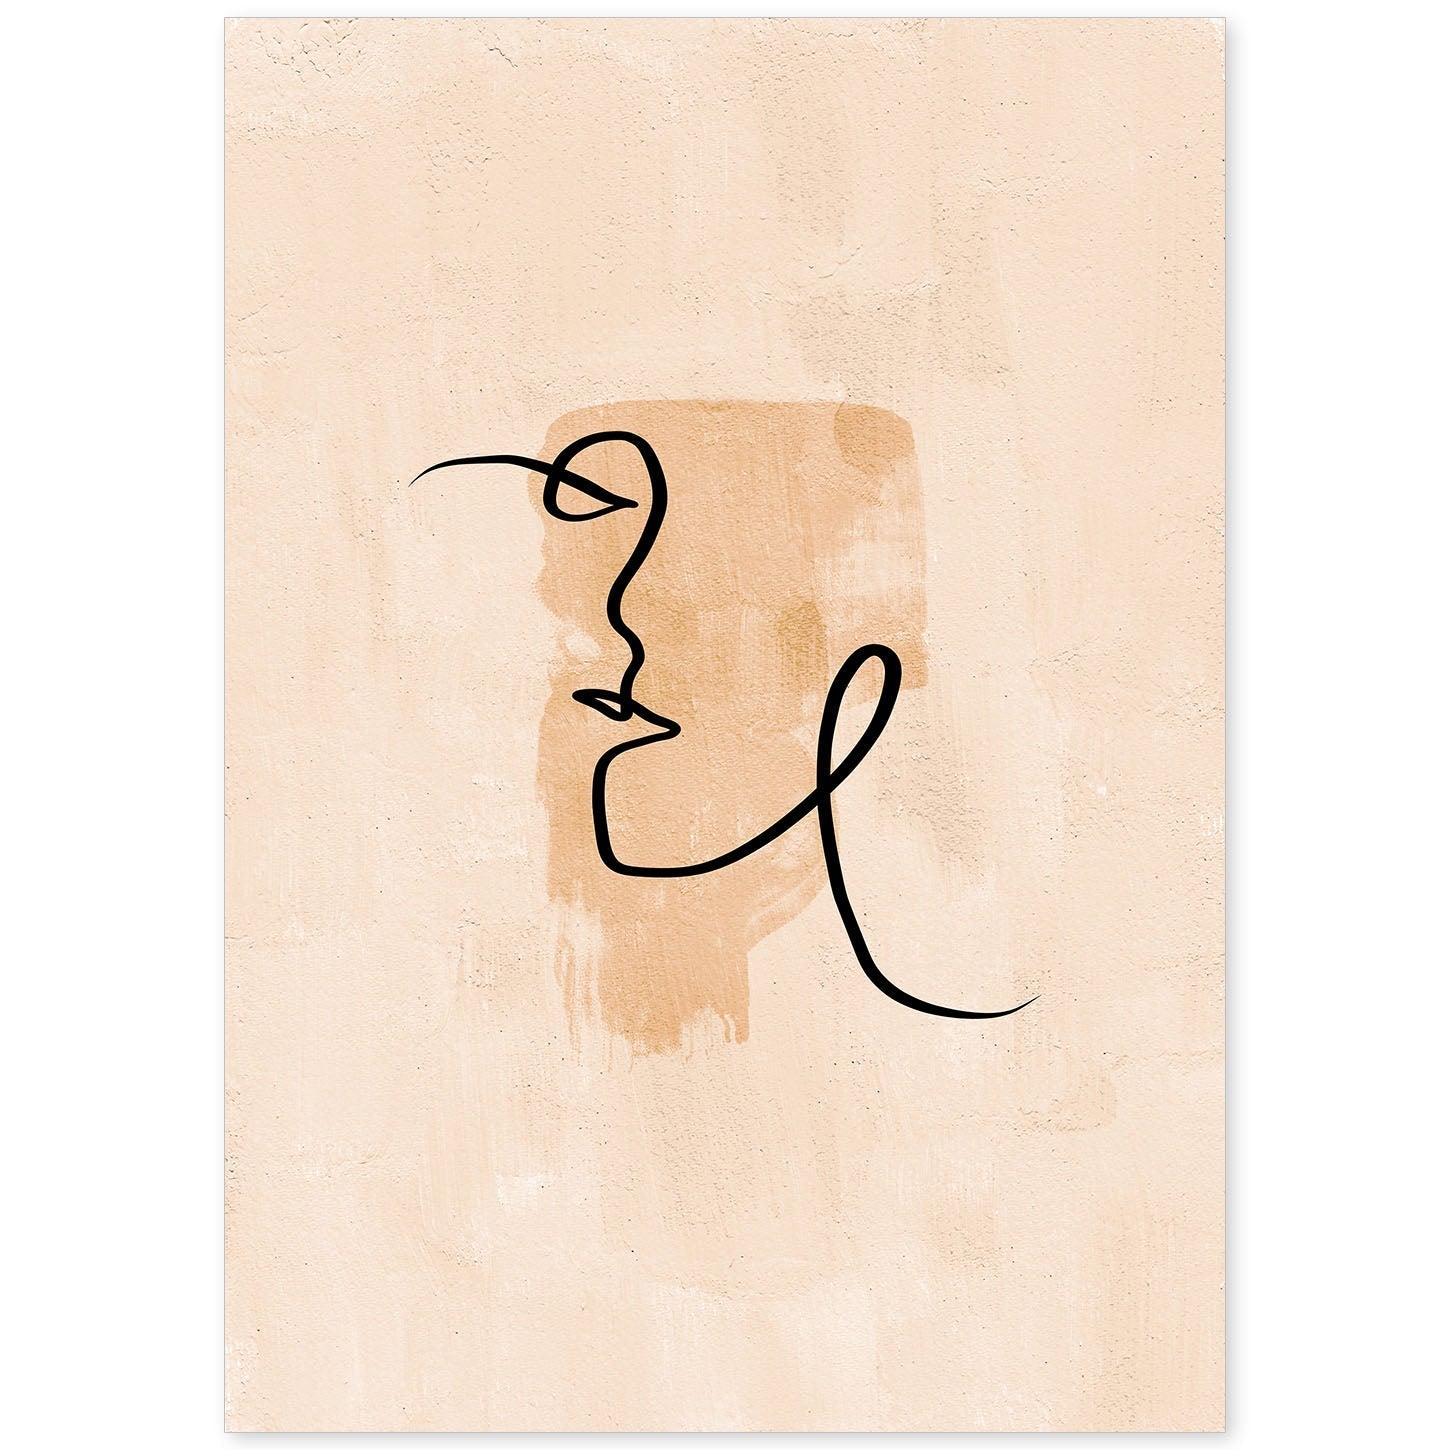 Poster con ilustracion de mujer. Dibujos con formas, caras, cuerpos y gestos de mujeres. 'Mujeres 21'.-Artwork-Nacnic-A4-Sin marco-Nacnic Estudio SL